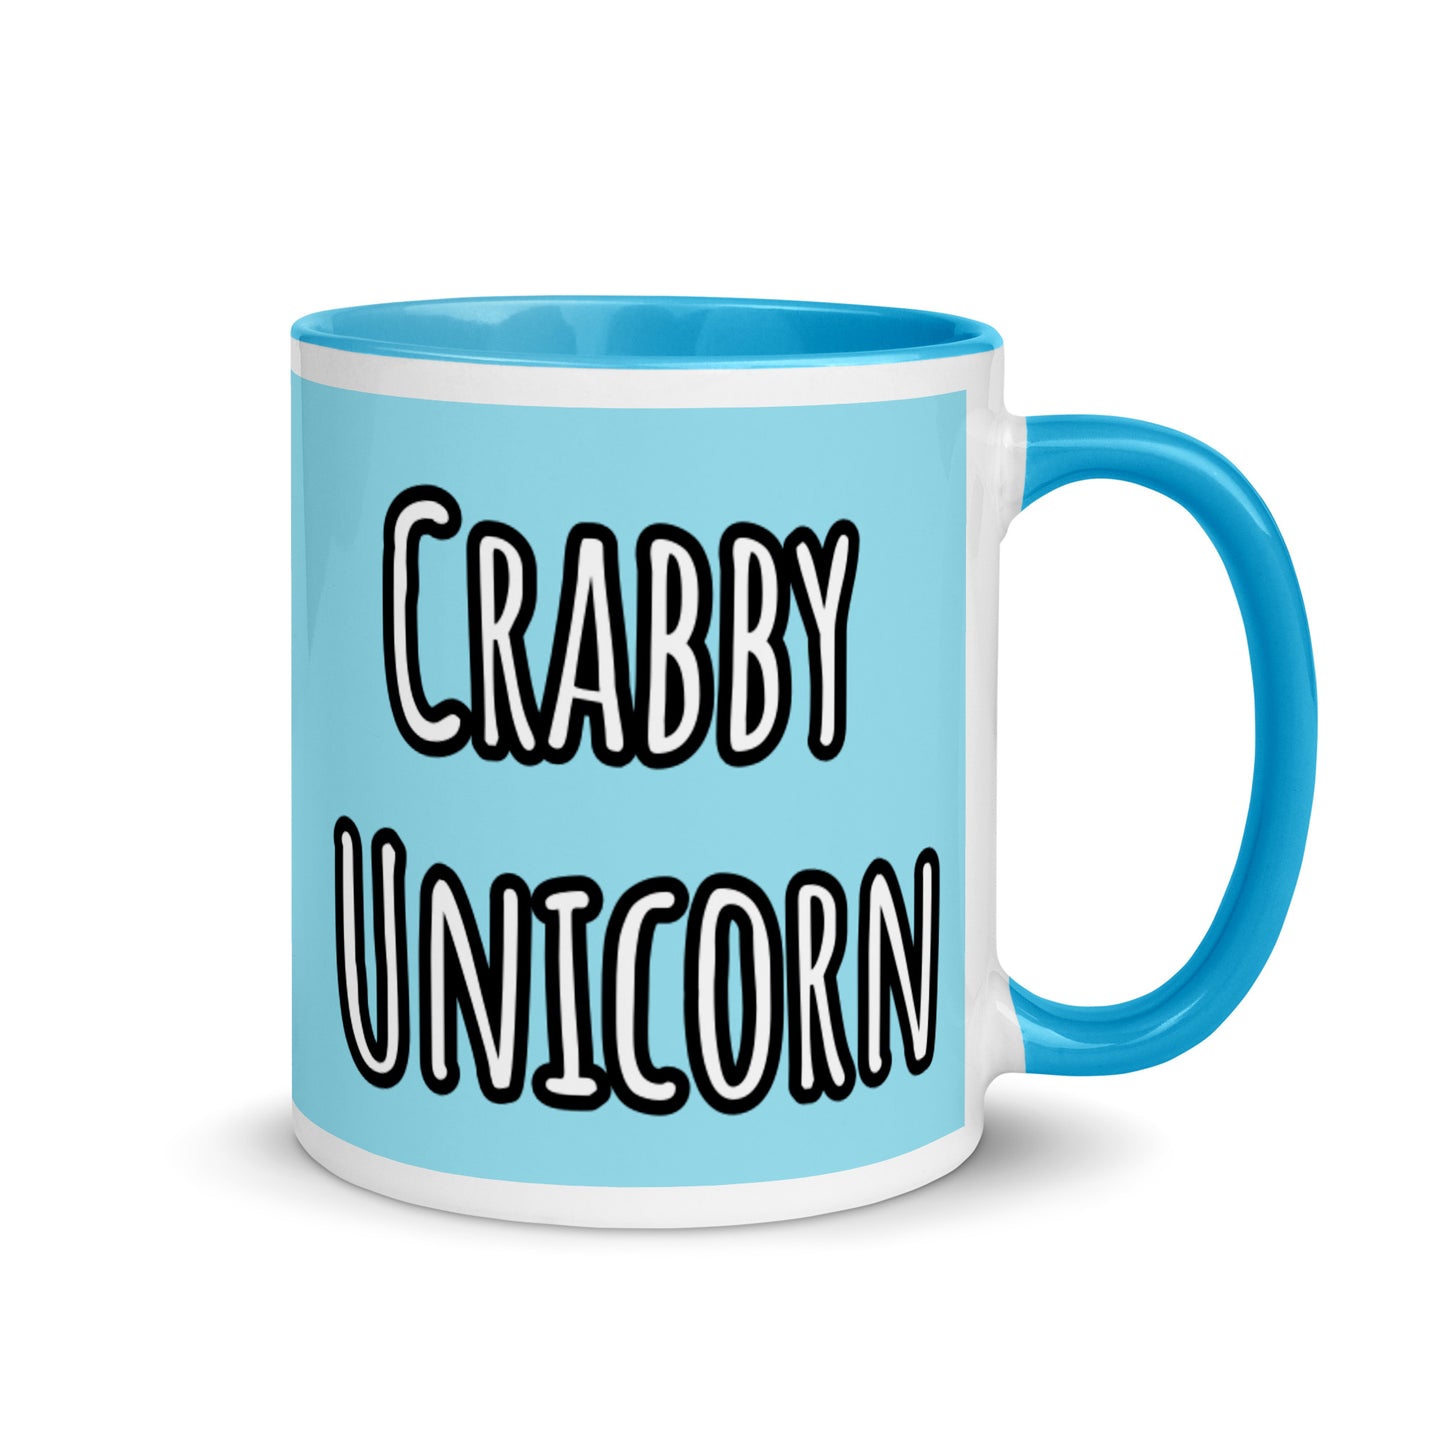 Cancer Unicorn Mug by #unicorntrends